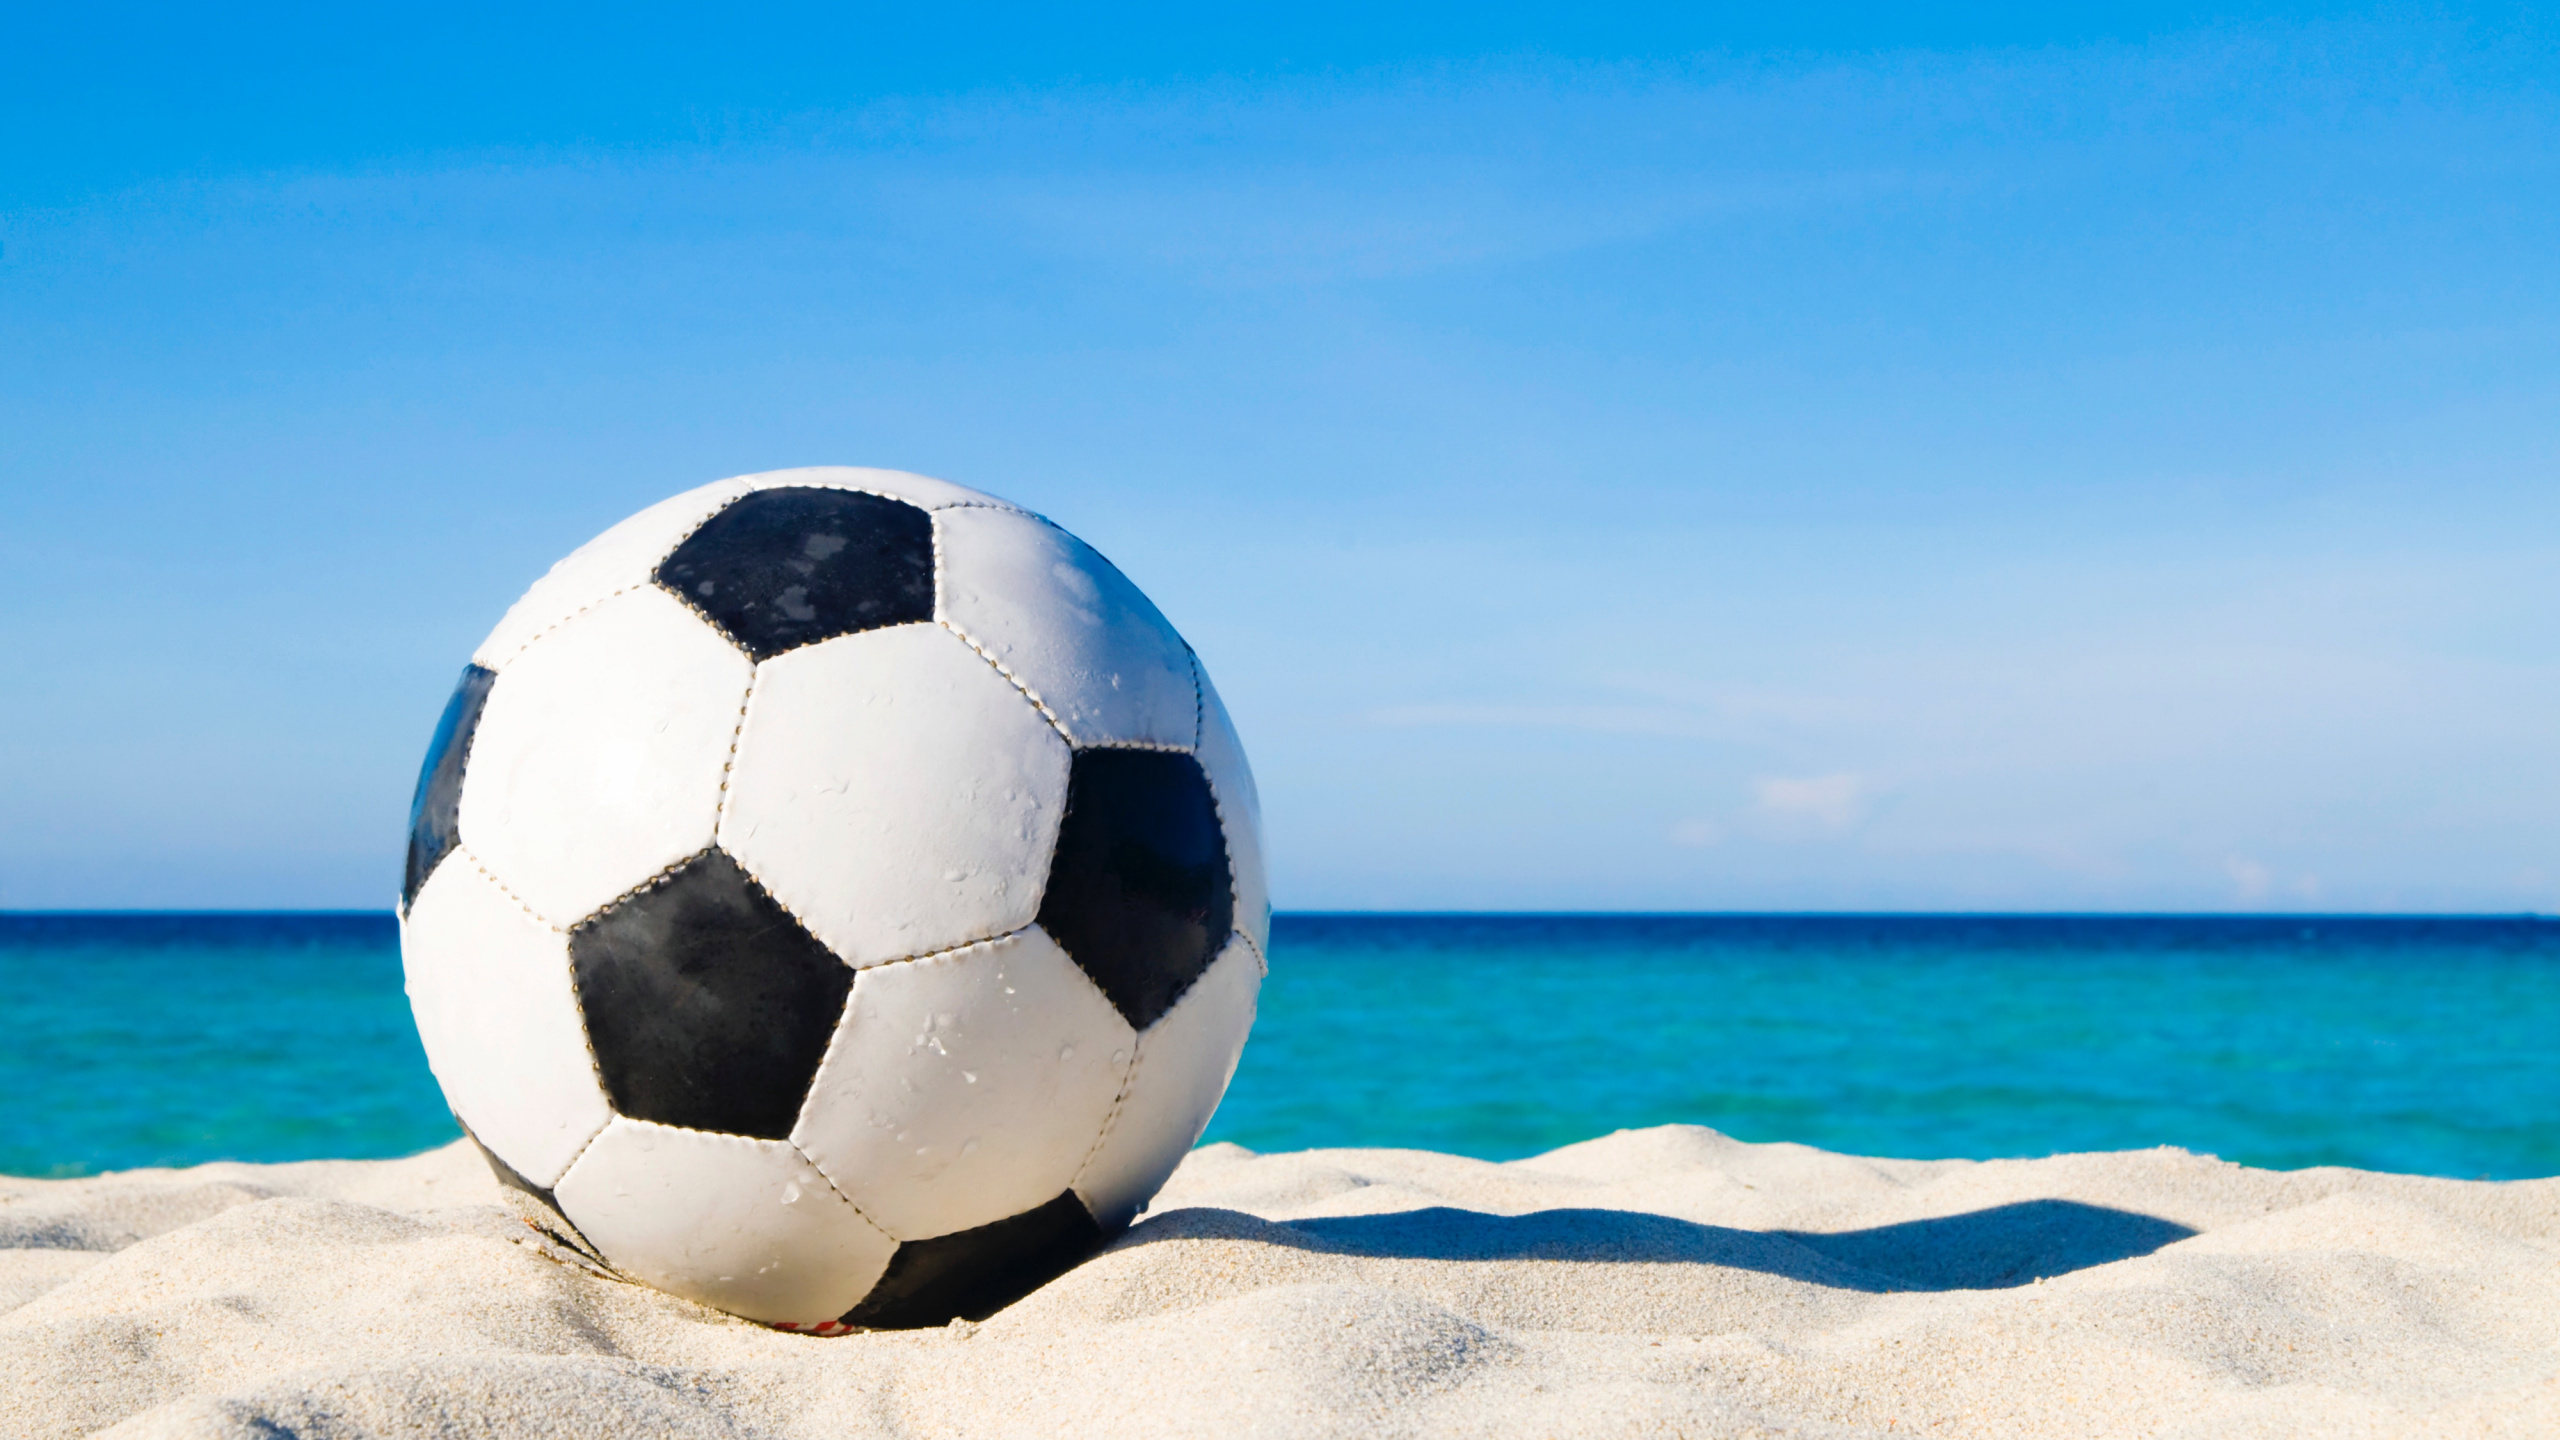 球, 足球, Azure, 度假, 休闲 壁纸 2560x1440 允许